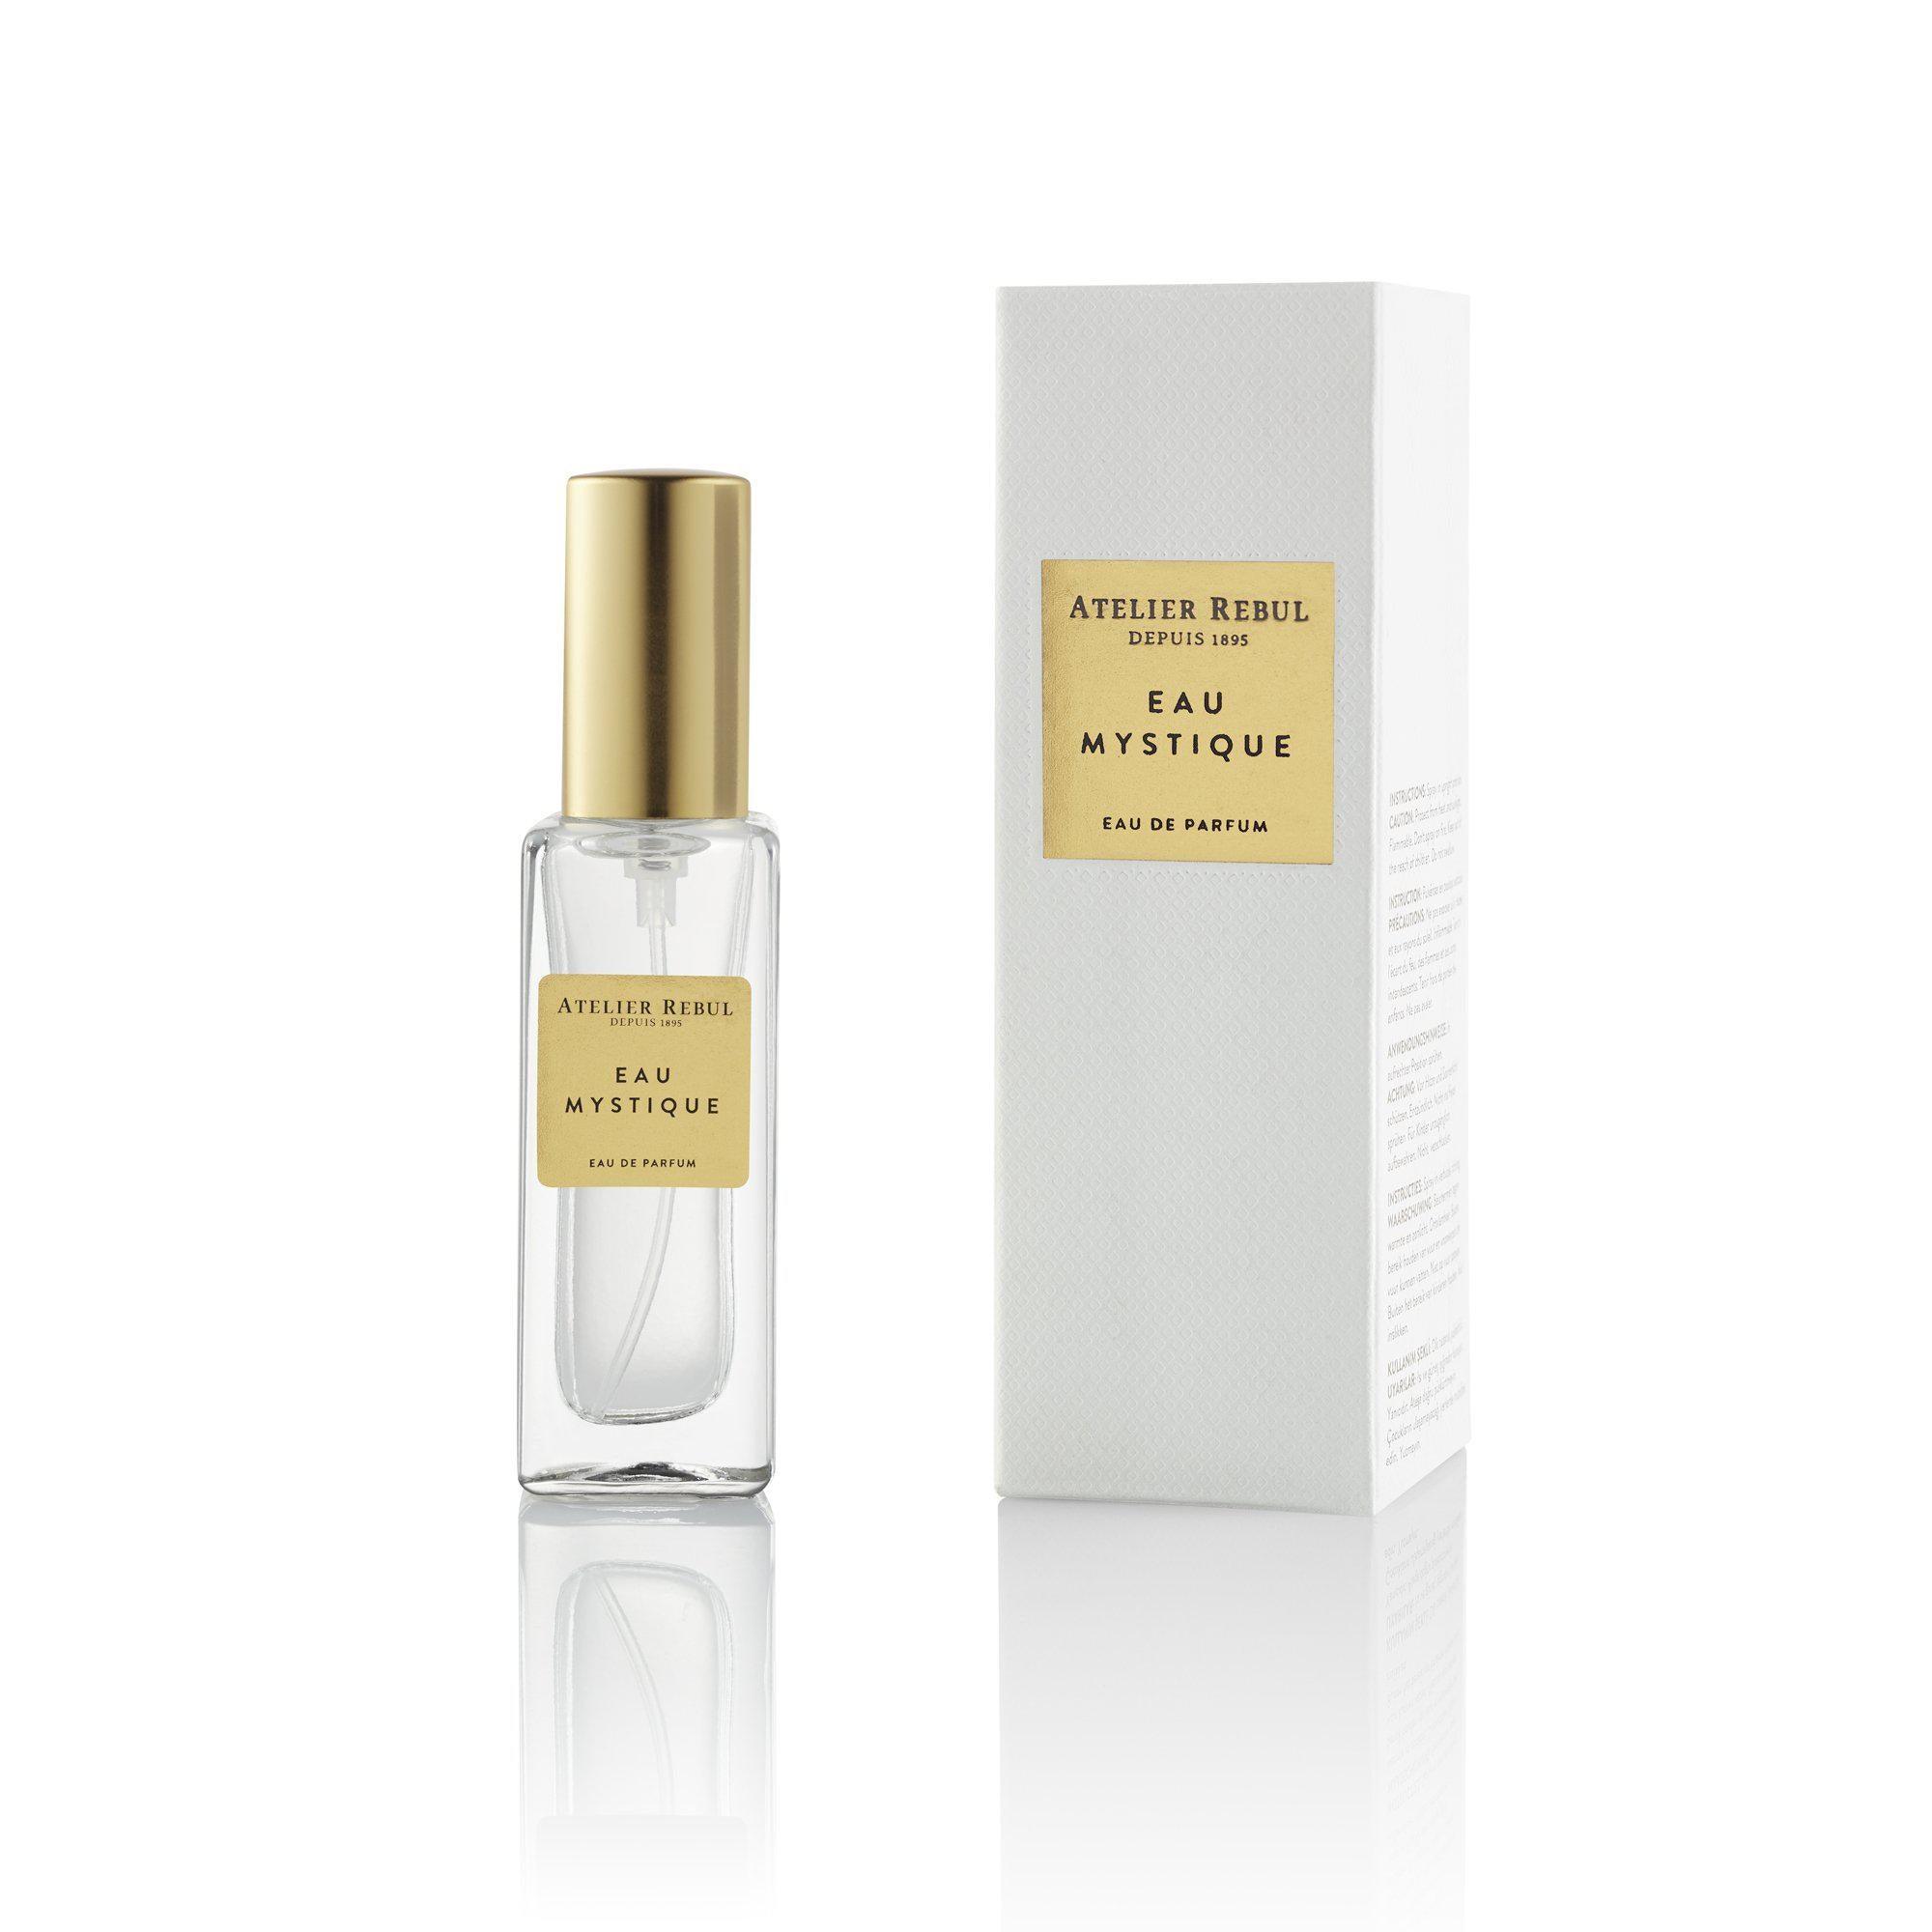 Atelier Rebul Mystique Eau de Parfum 12ml for Women - MeMeMe Gifts